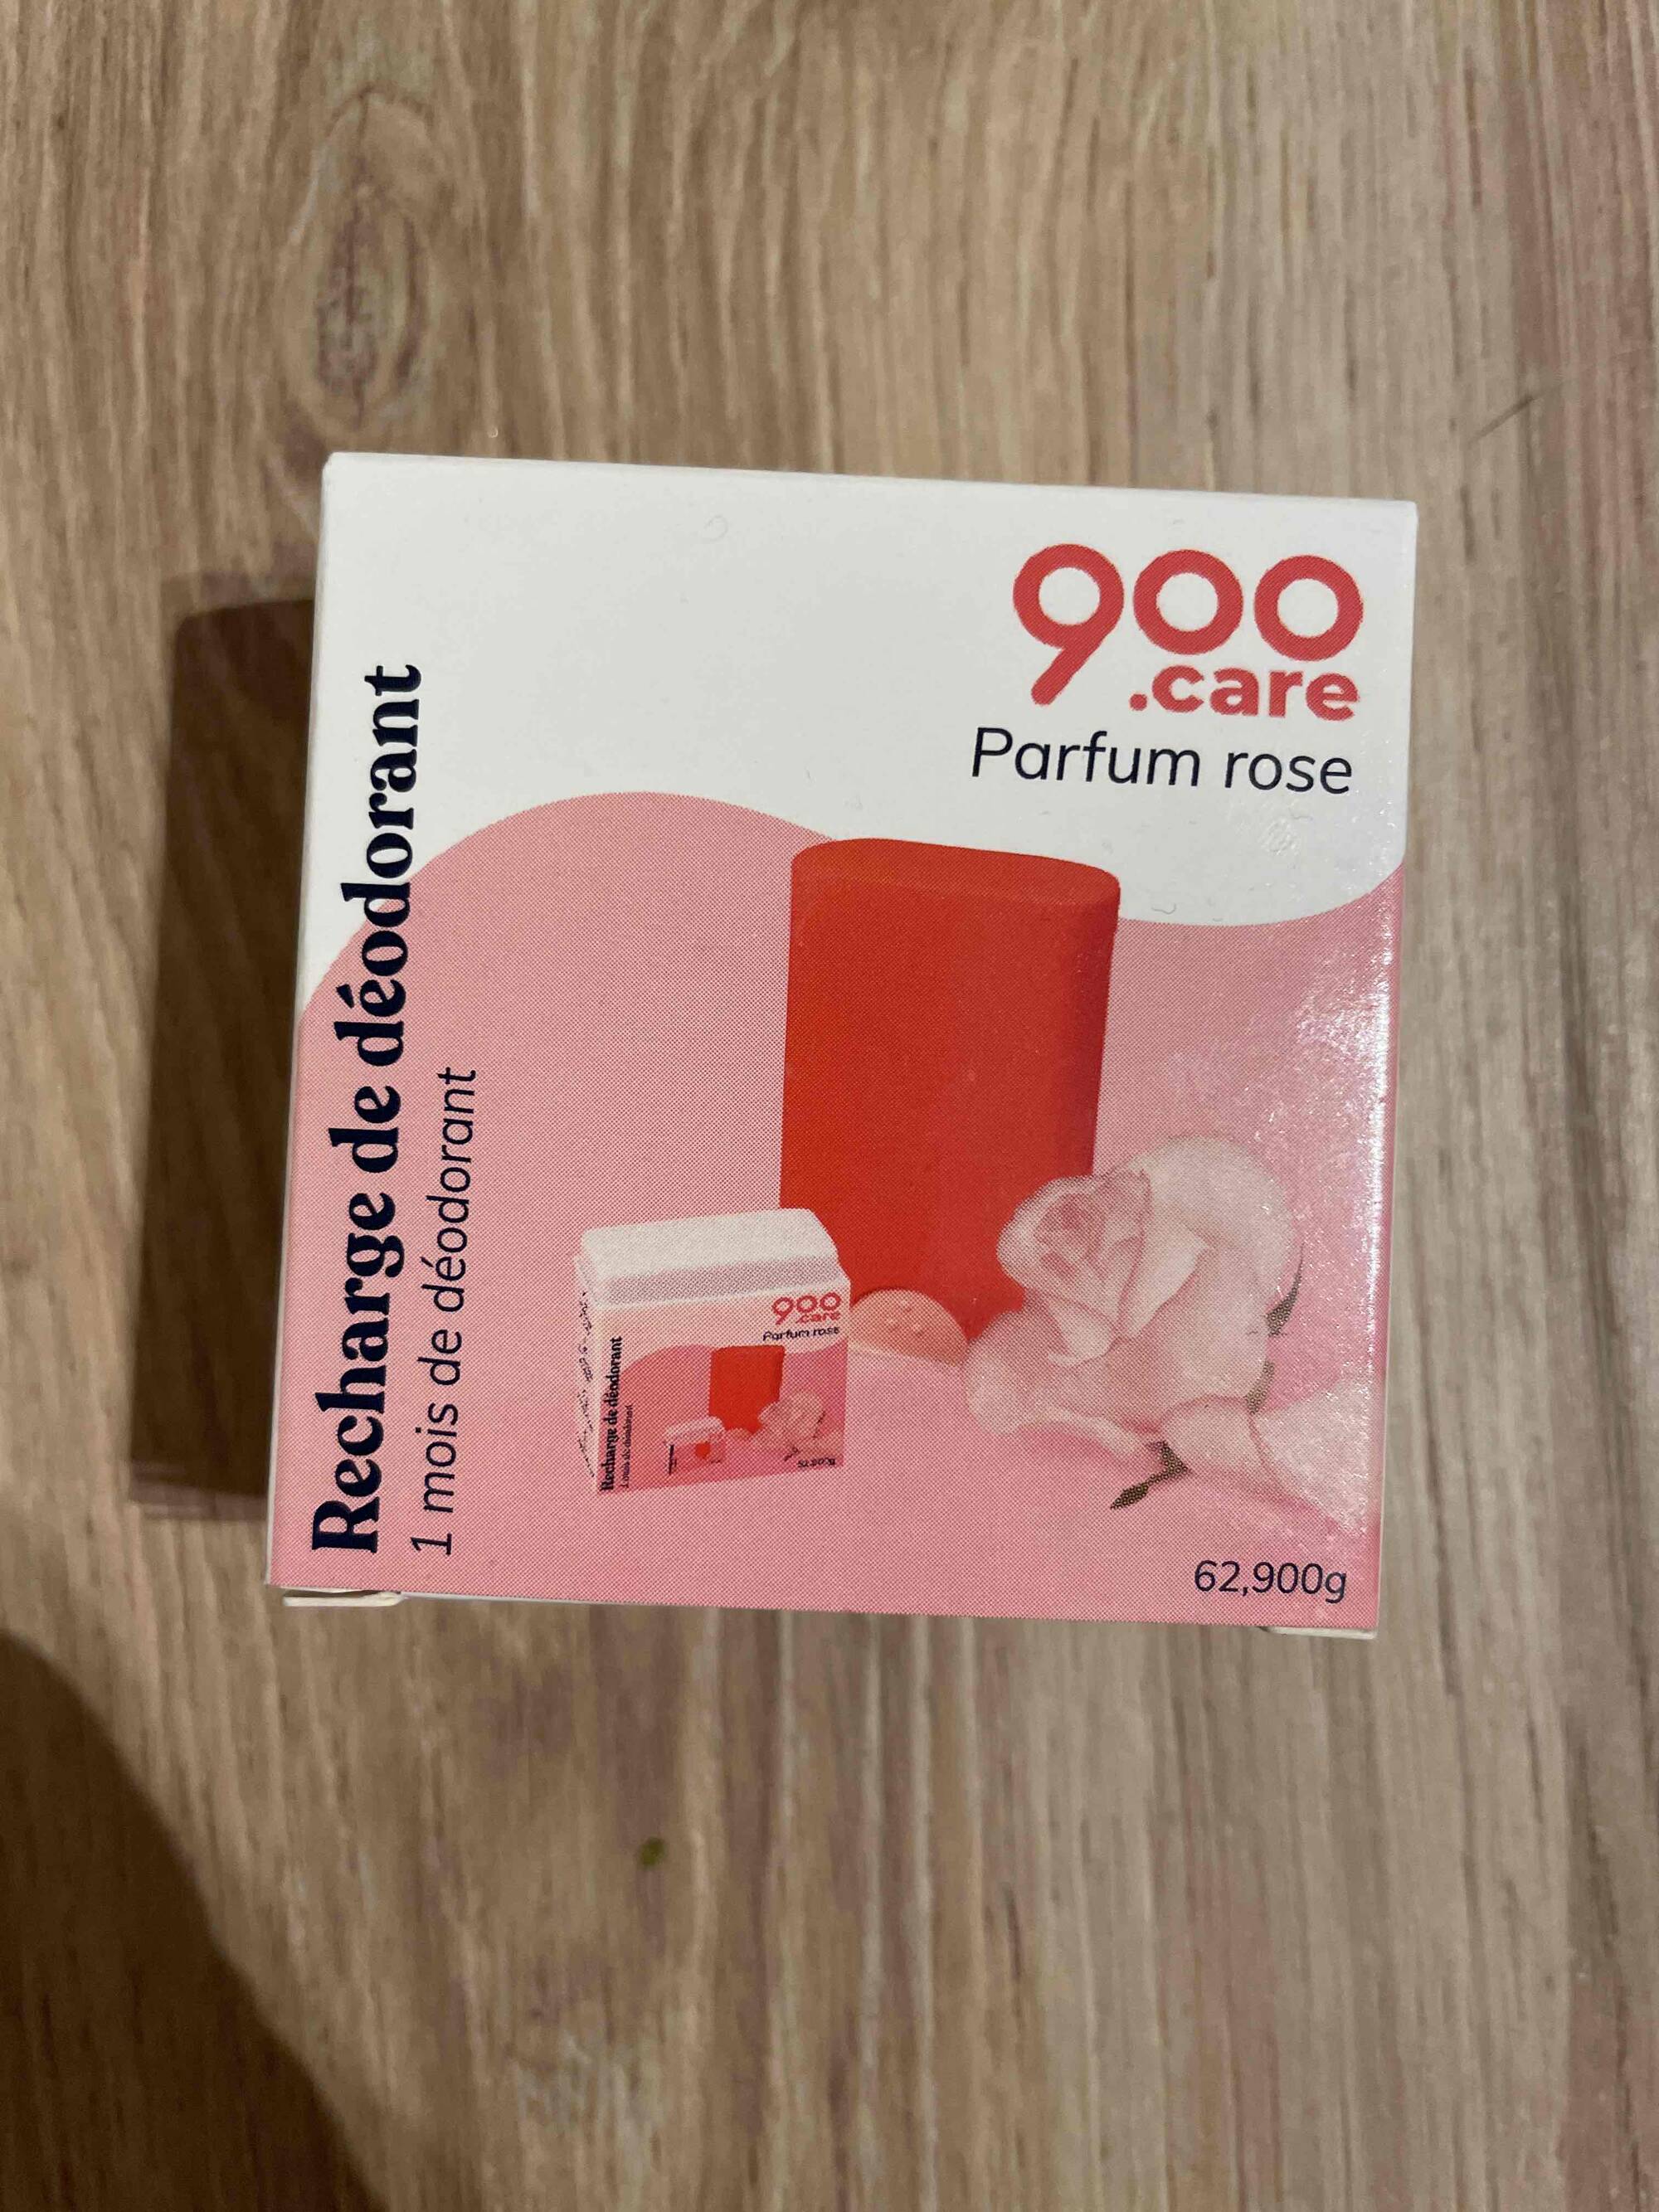 900.CARE - Rechange de déodorant parfum rose